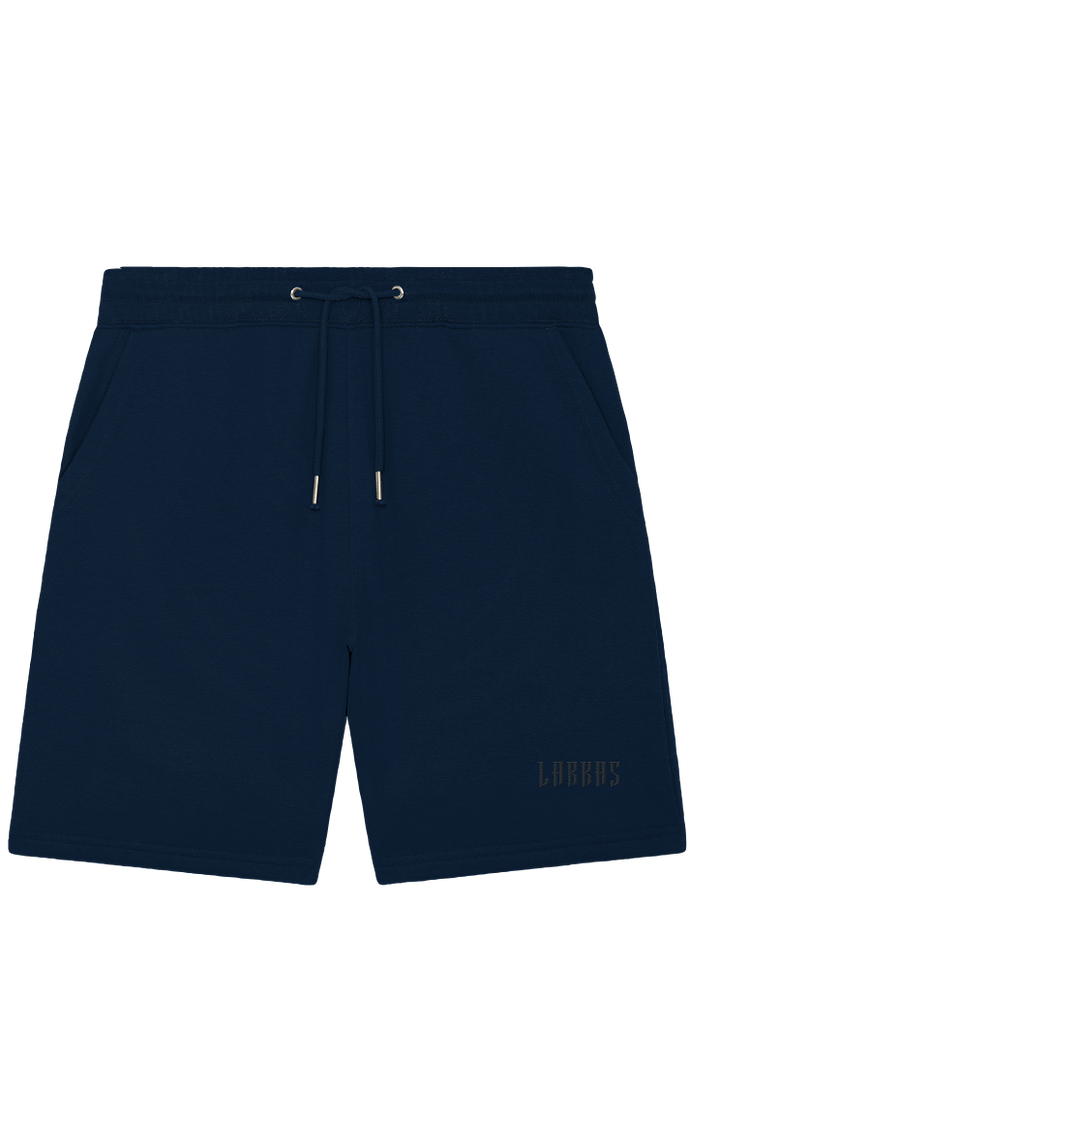 Brooklyn Shorts